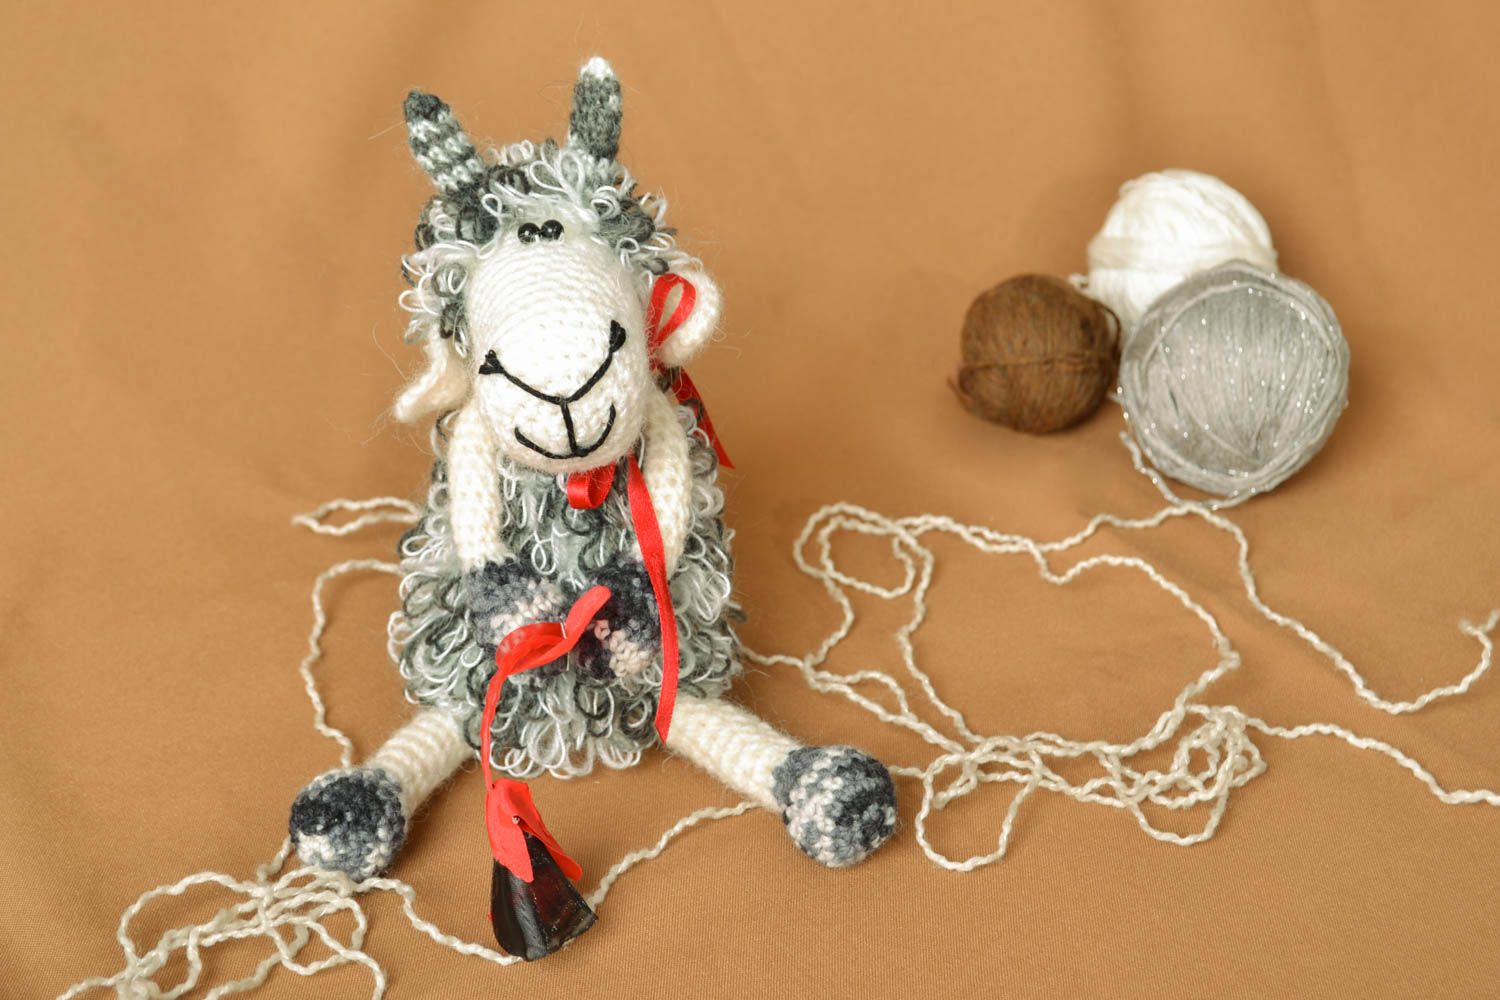 Soft crochet toy Fluffy Sheep photo 5